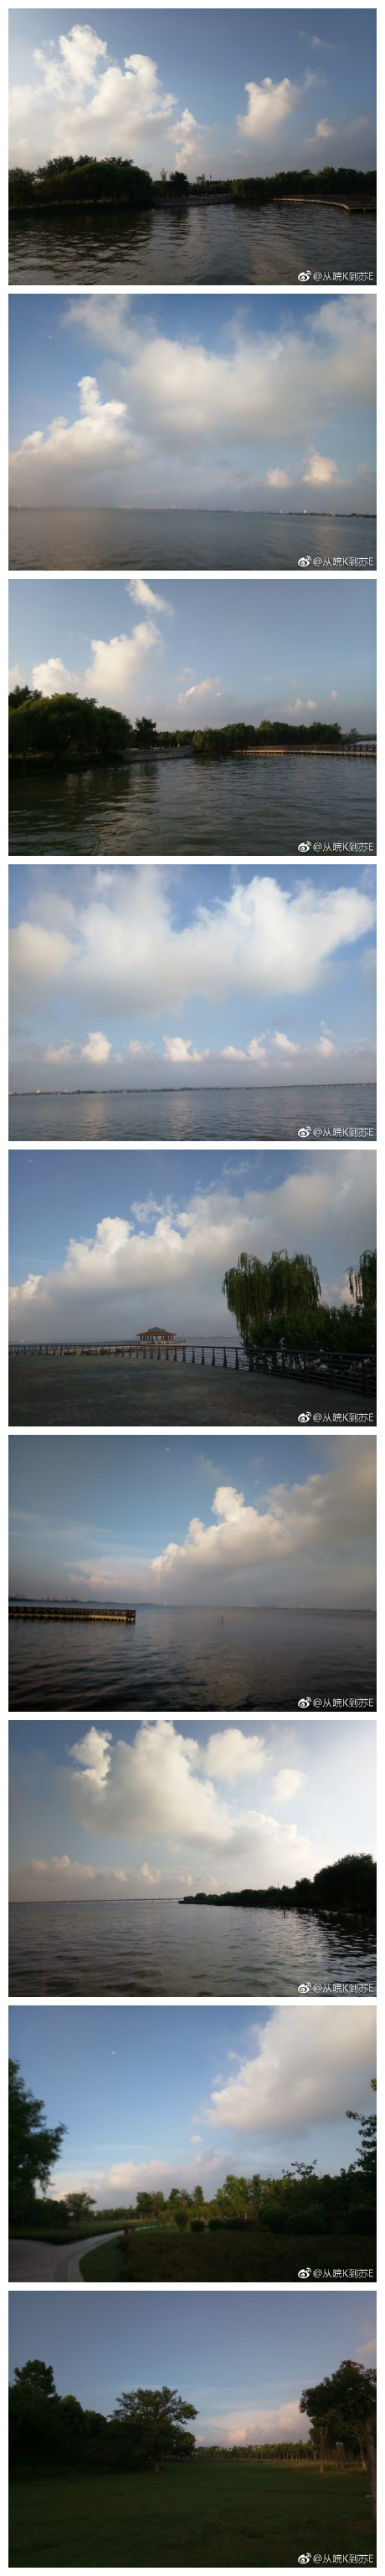 此时的苏州阳澄湖生态体育公园，天很蓝，云很低，享受每天好的环境，享受每天大汗淋漓的感觉！